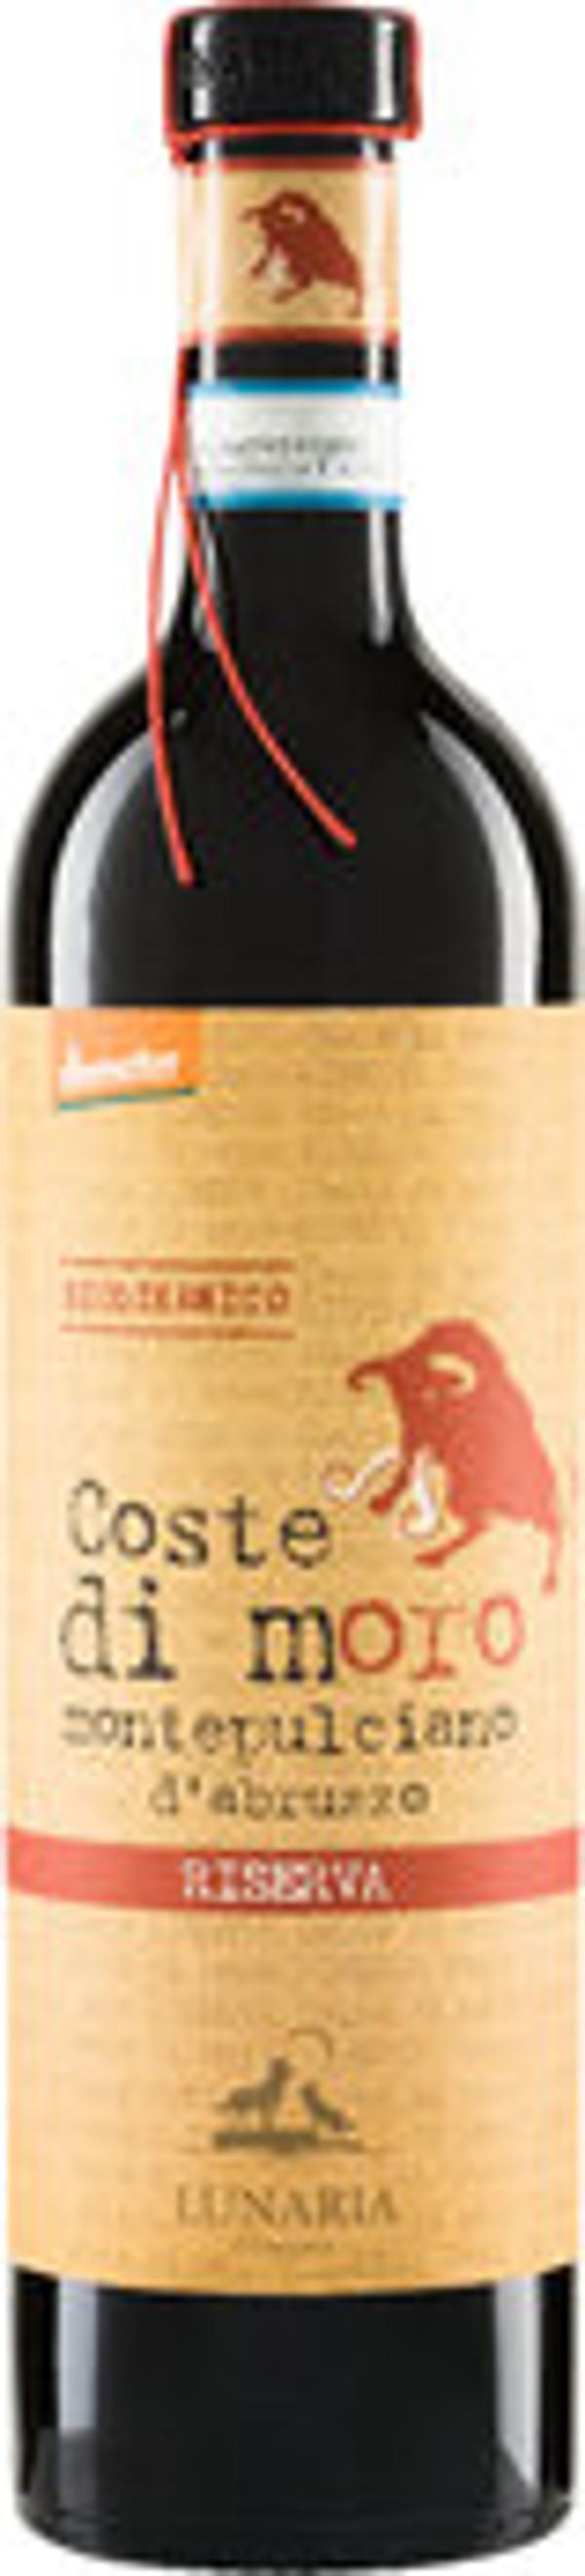 Produktfoto zu Coste di Moro Riserva rot, 0,75 l